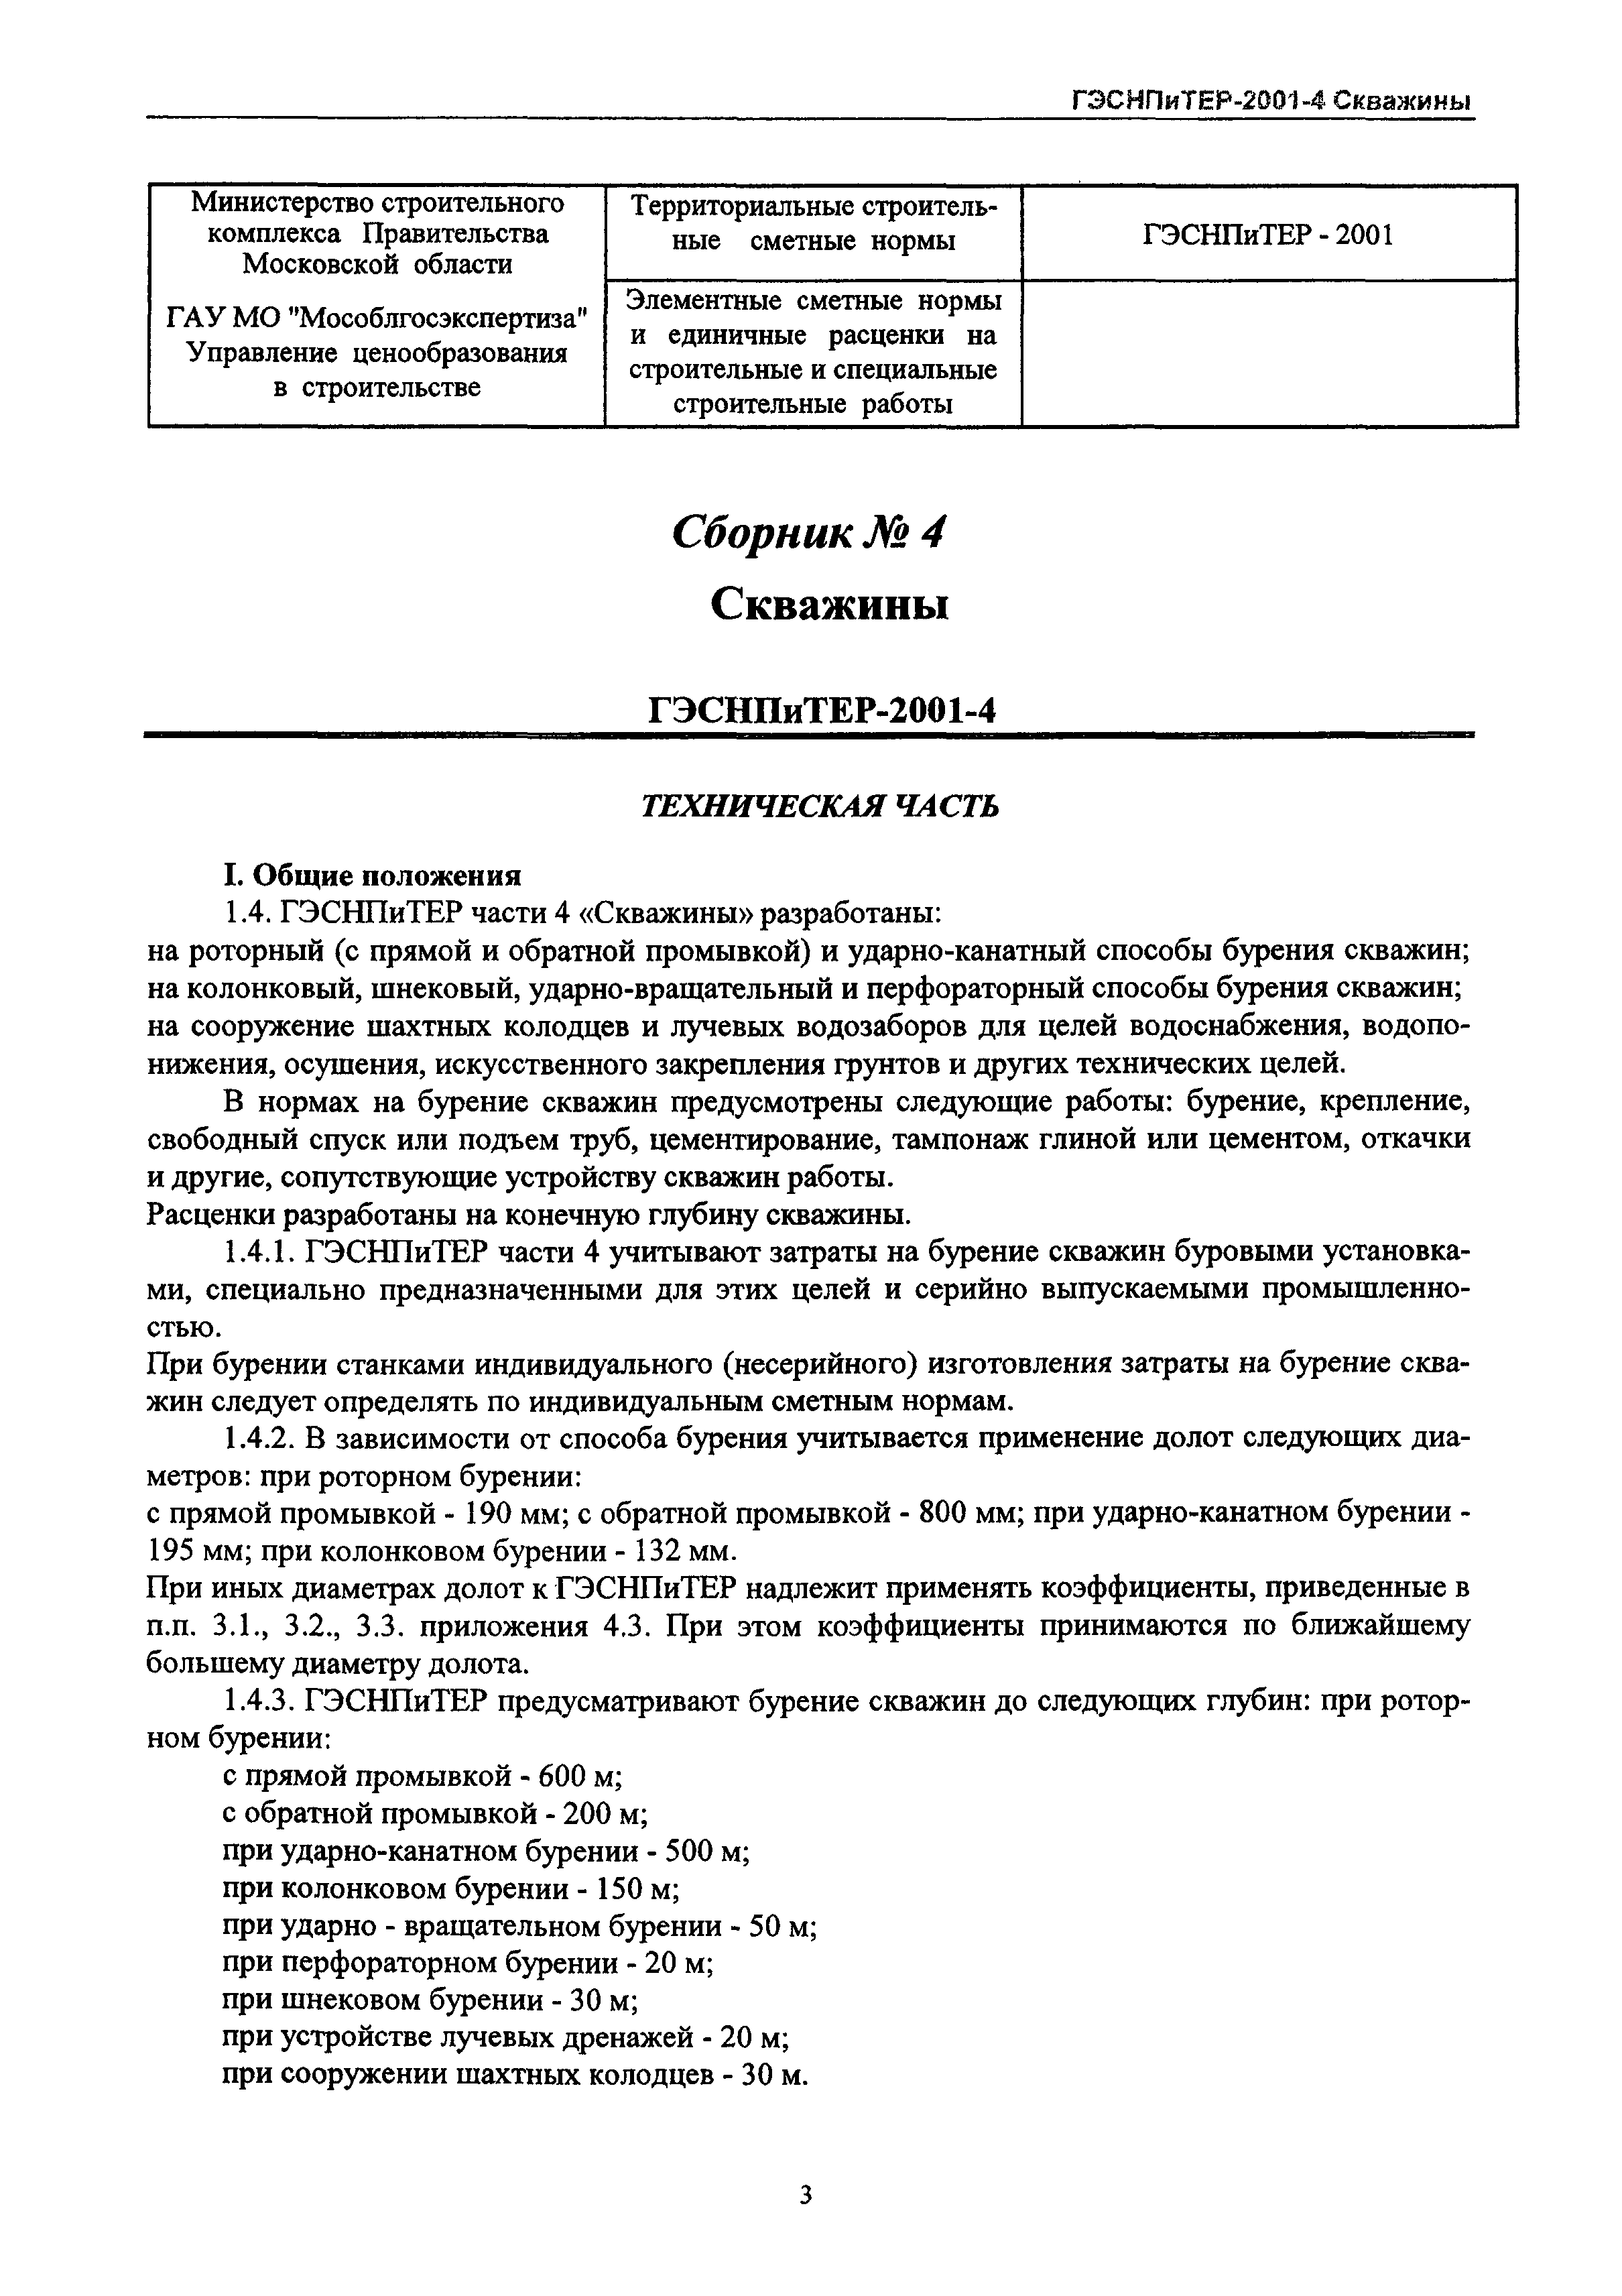 ГЭСНПиТЕР 2001-4 Московской области